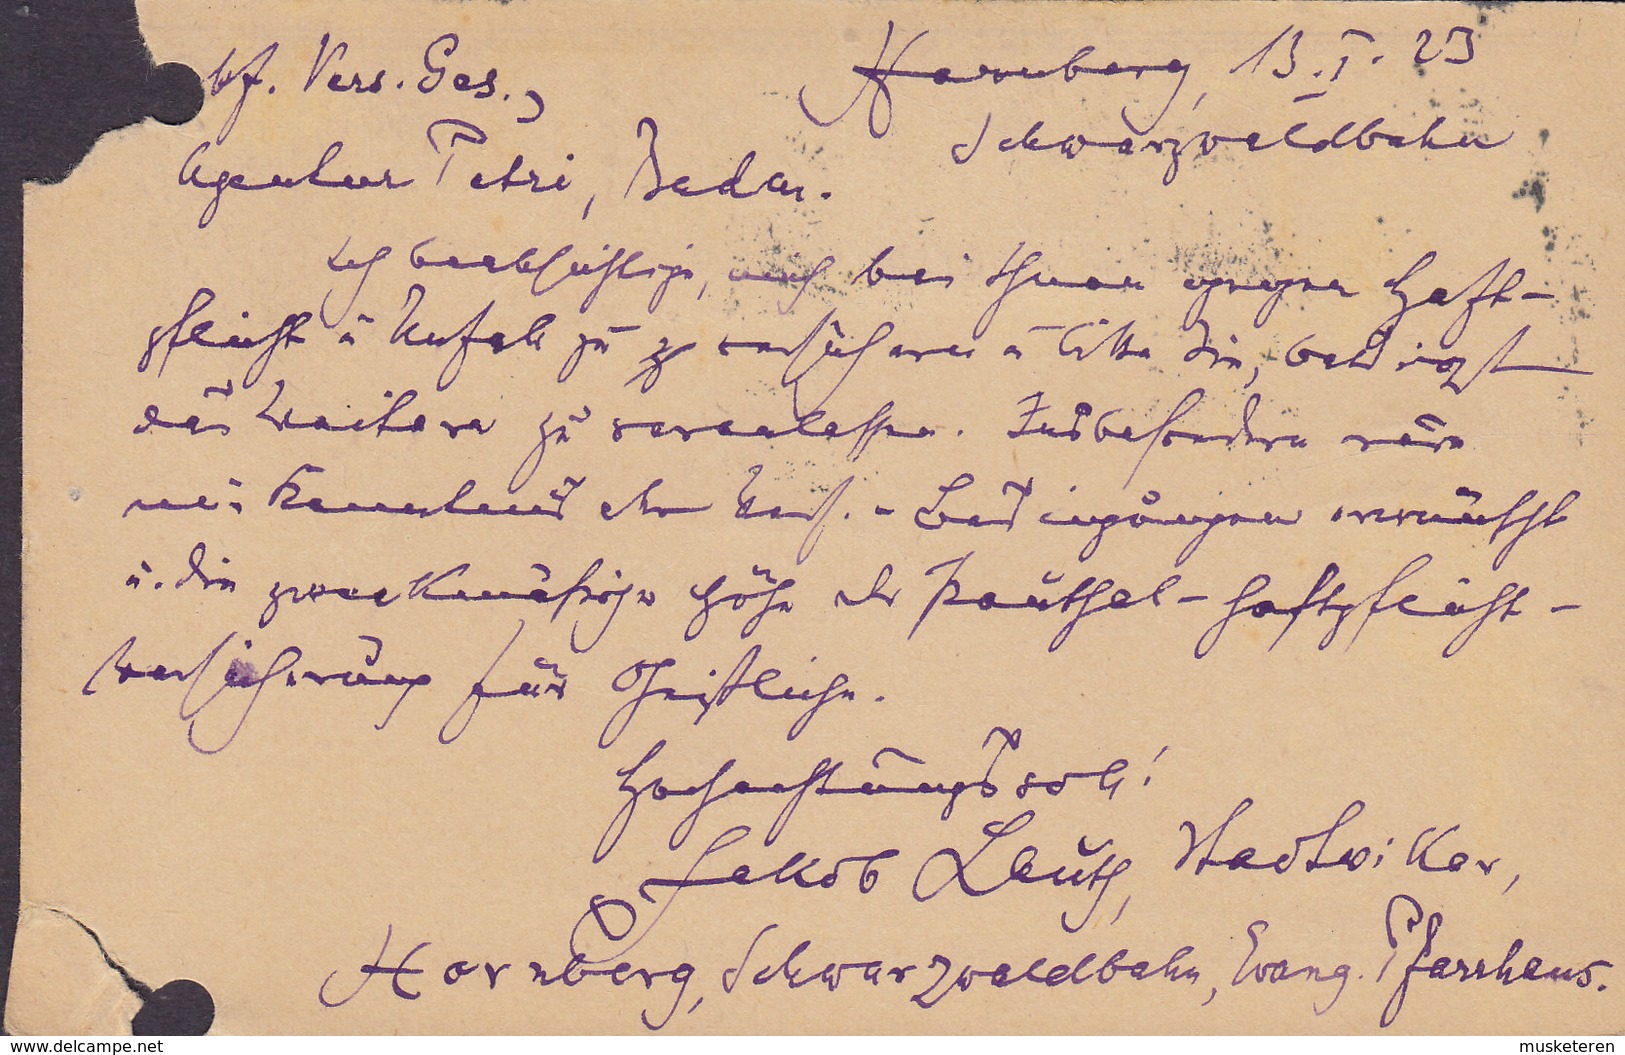 Deutsches Reich Uprated Postal Stationery Ganzsache Entier 75 Pf. Postreiter HORNBERG 1923 (2 Scans) - Cartoline